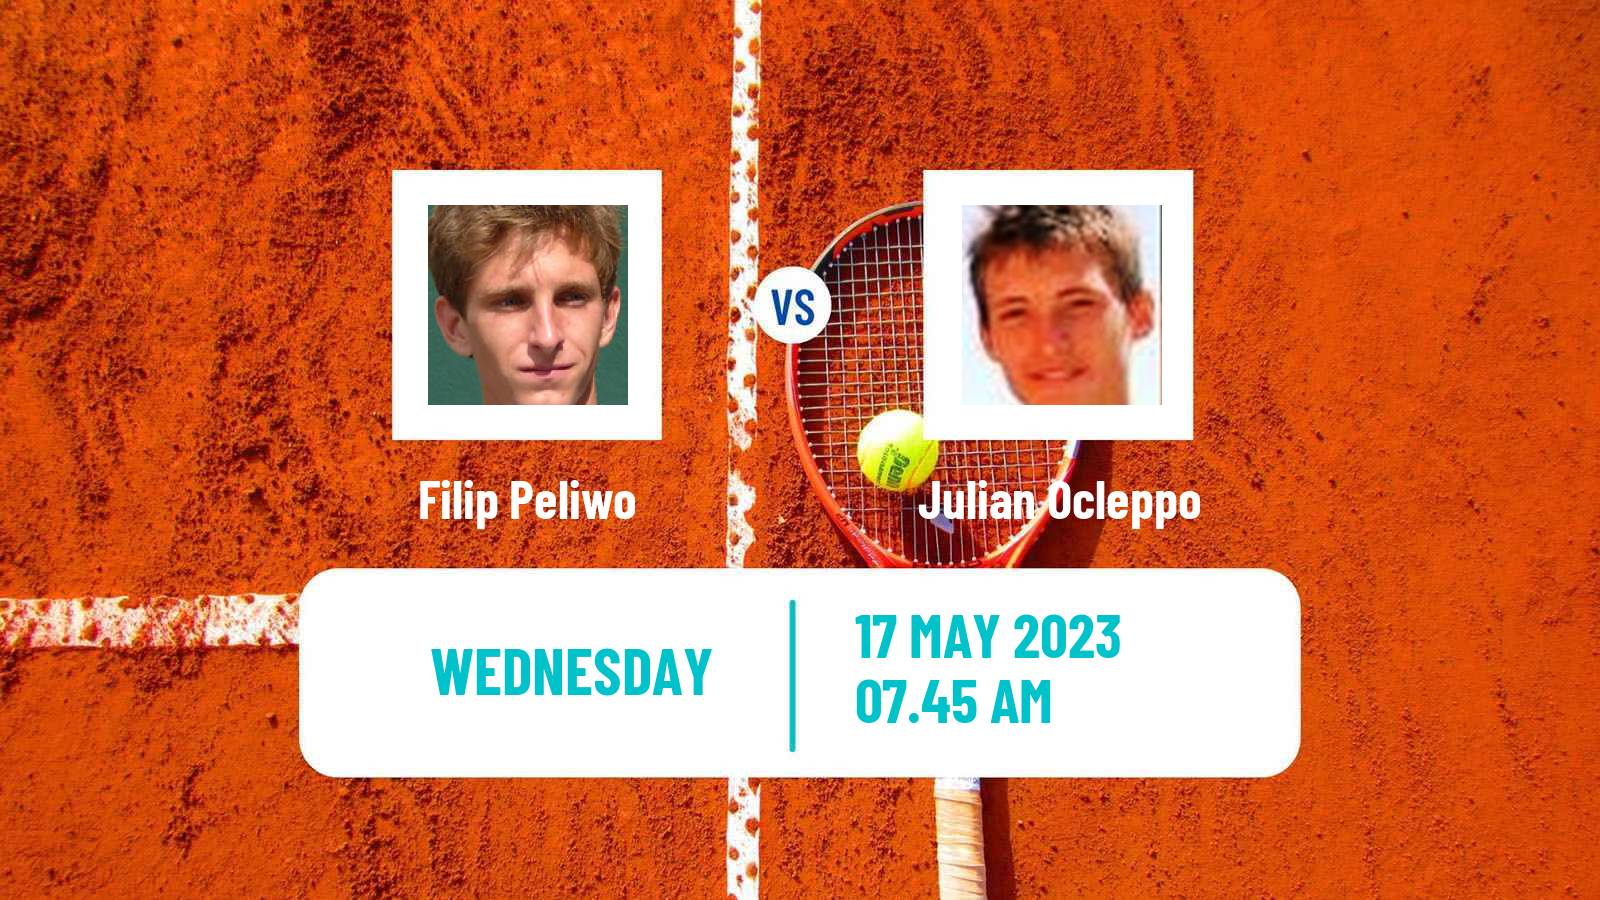 Tennis ITF M25 Reggio Emilia Men Filip Peliwo - Julian Ocleppo